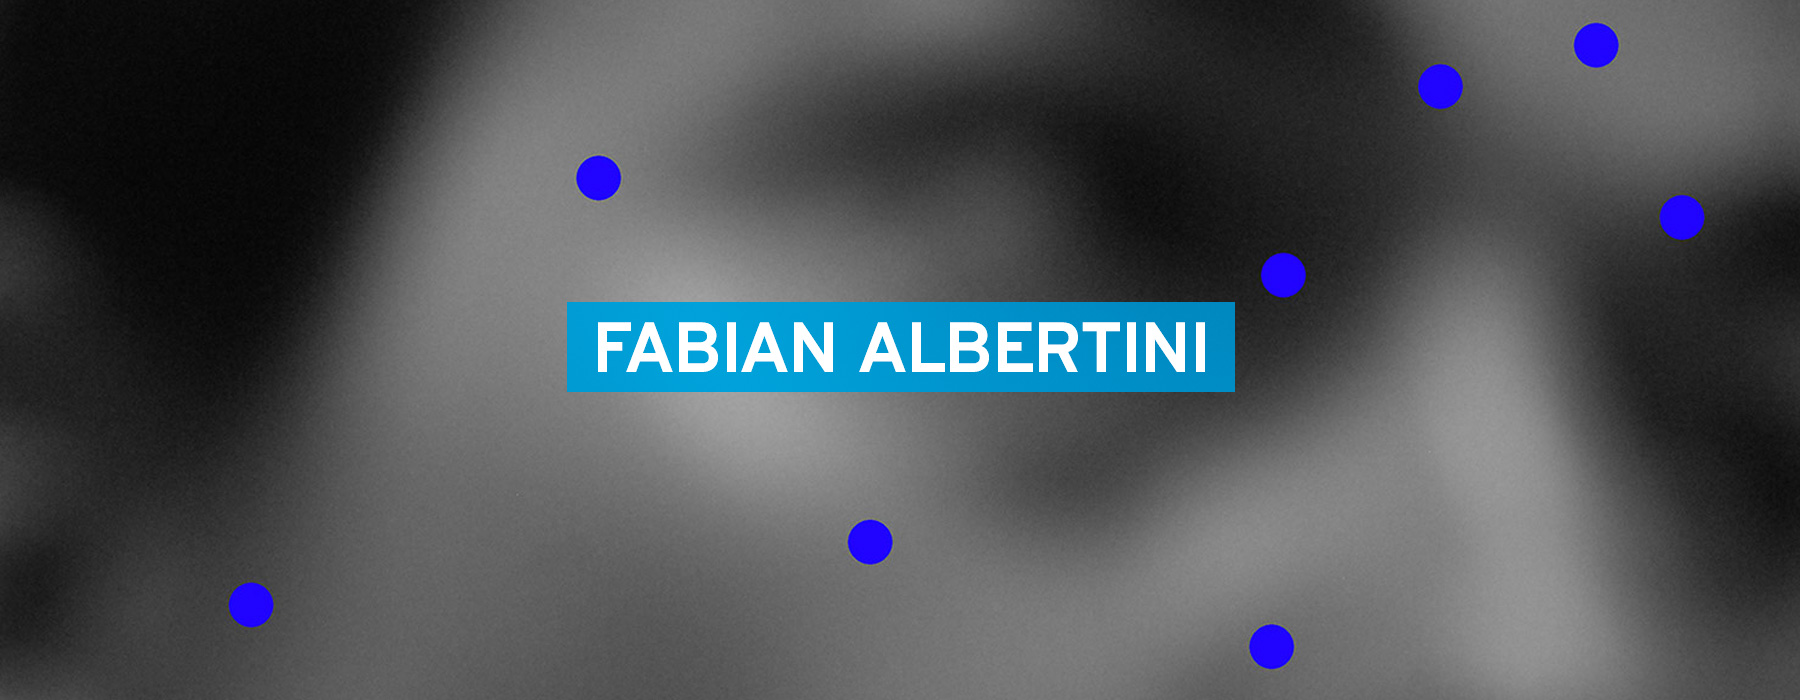 Fiumefreddo Photo Festival - Fabian Albertini